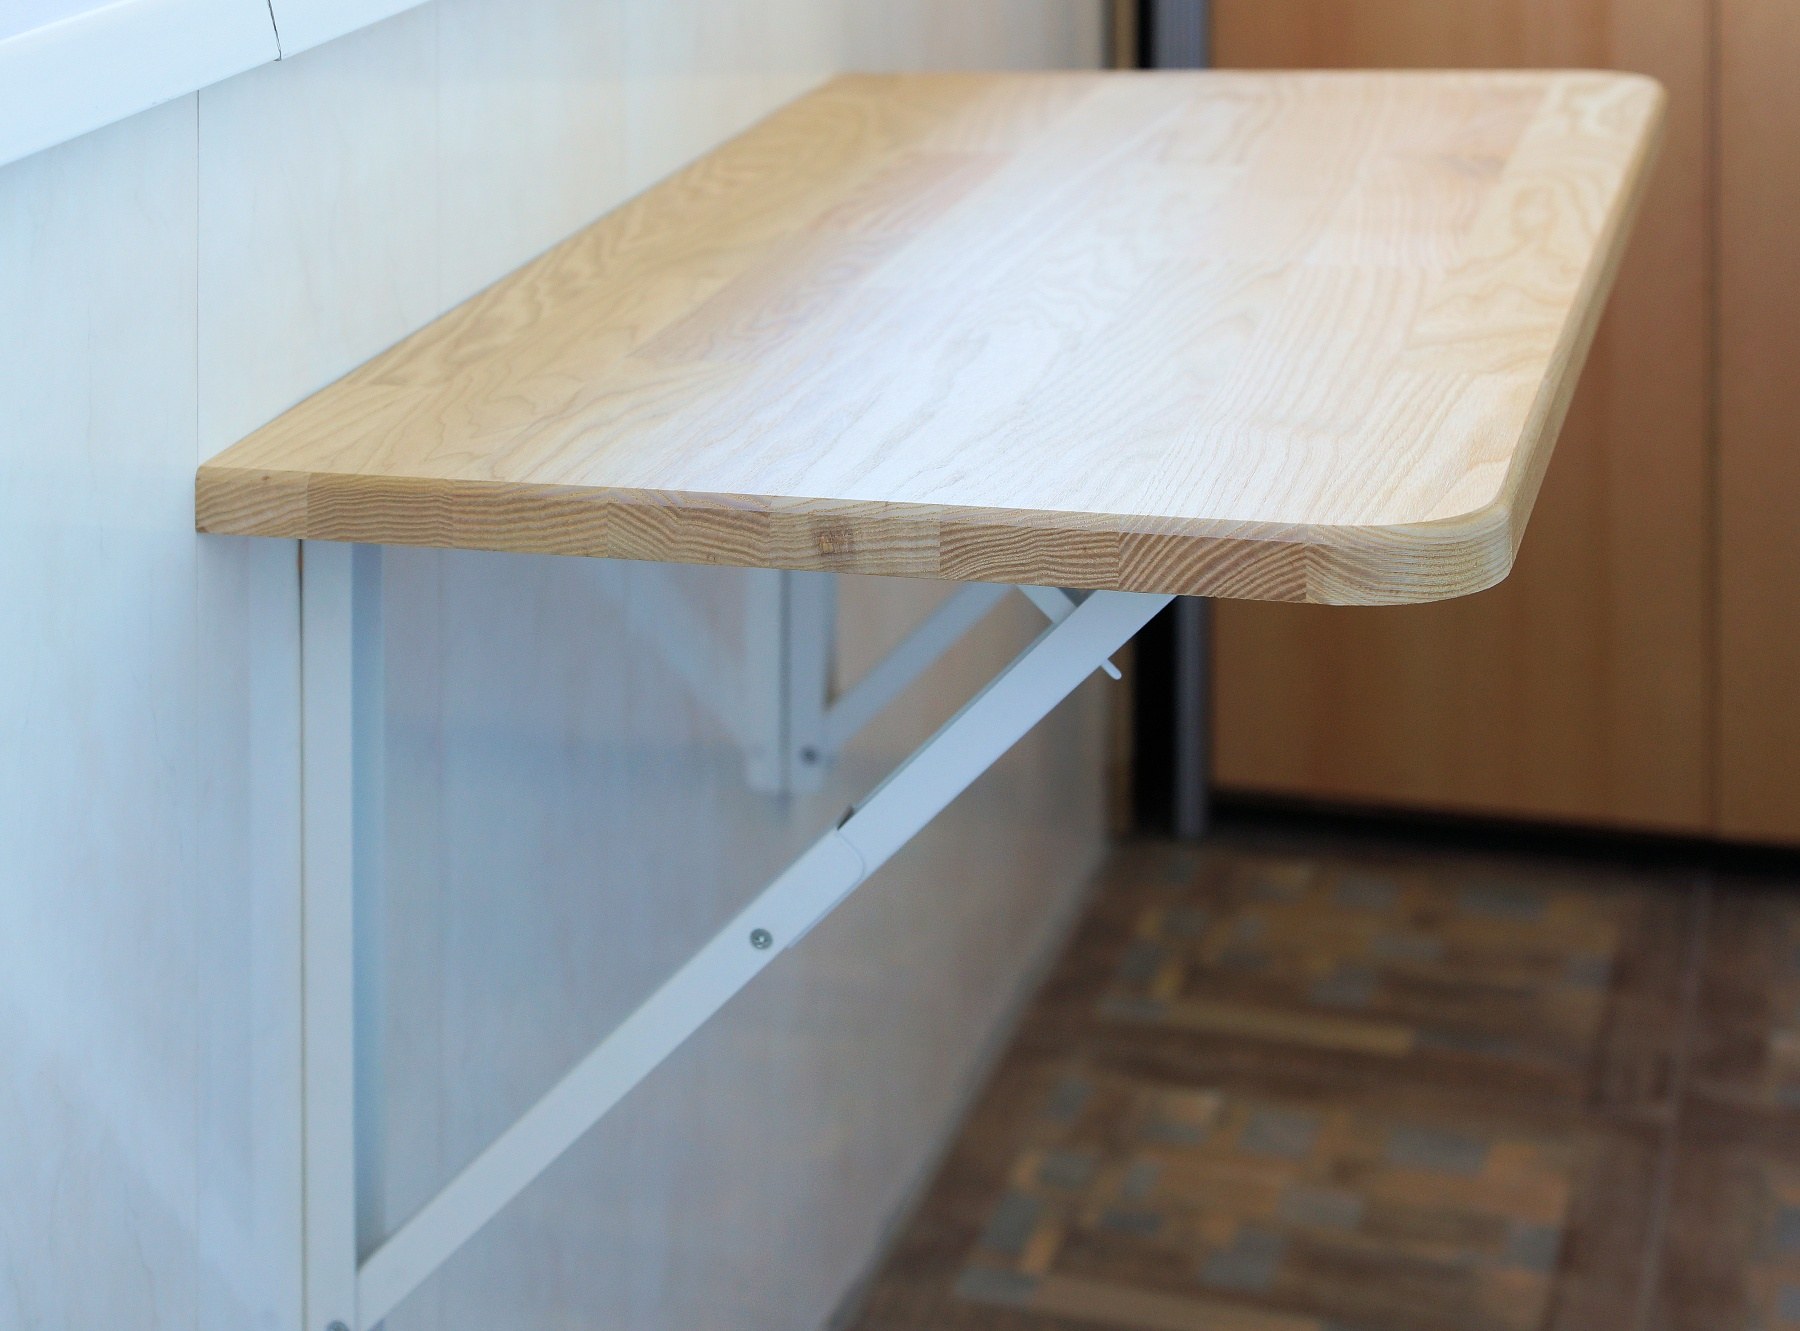 Подпереть стол. Hsh35 комплект для откидного столика (крепление на направляющую). Стол пристенный, откидной м142-011. Откидной столик на кухню. Откидная столешница.